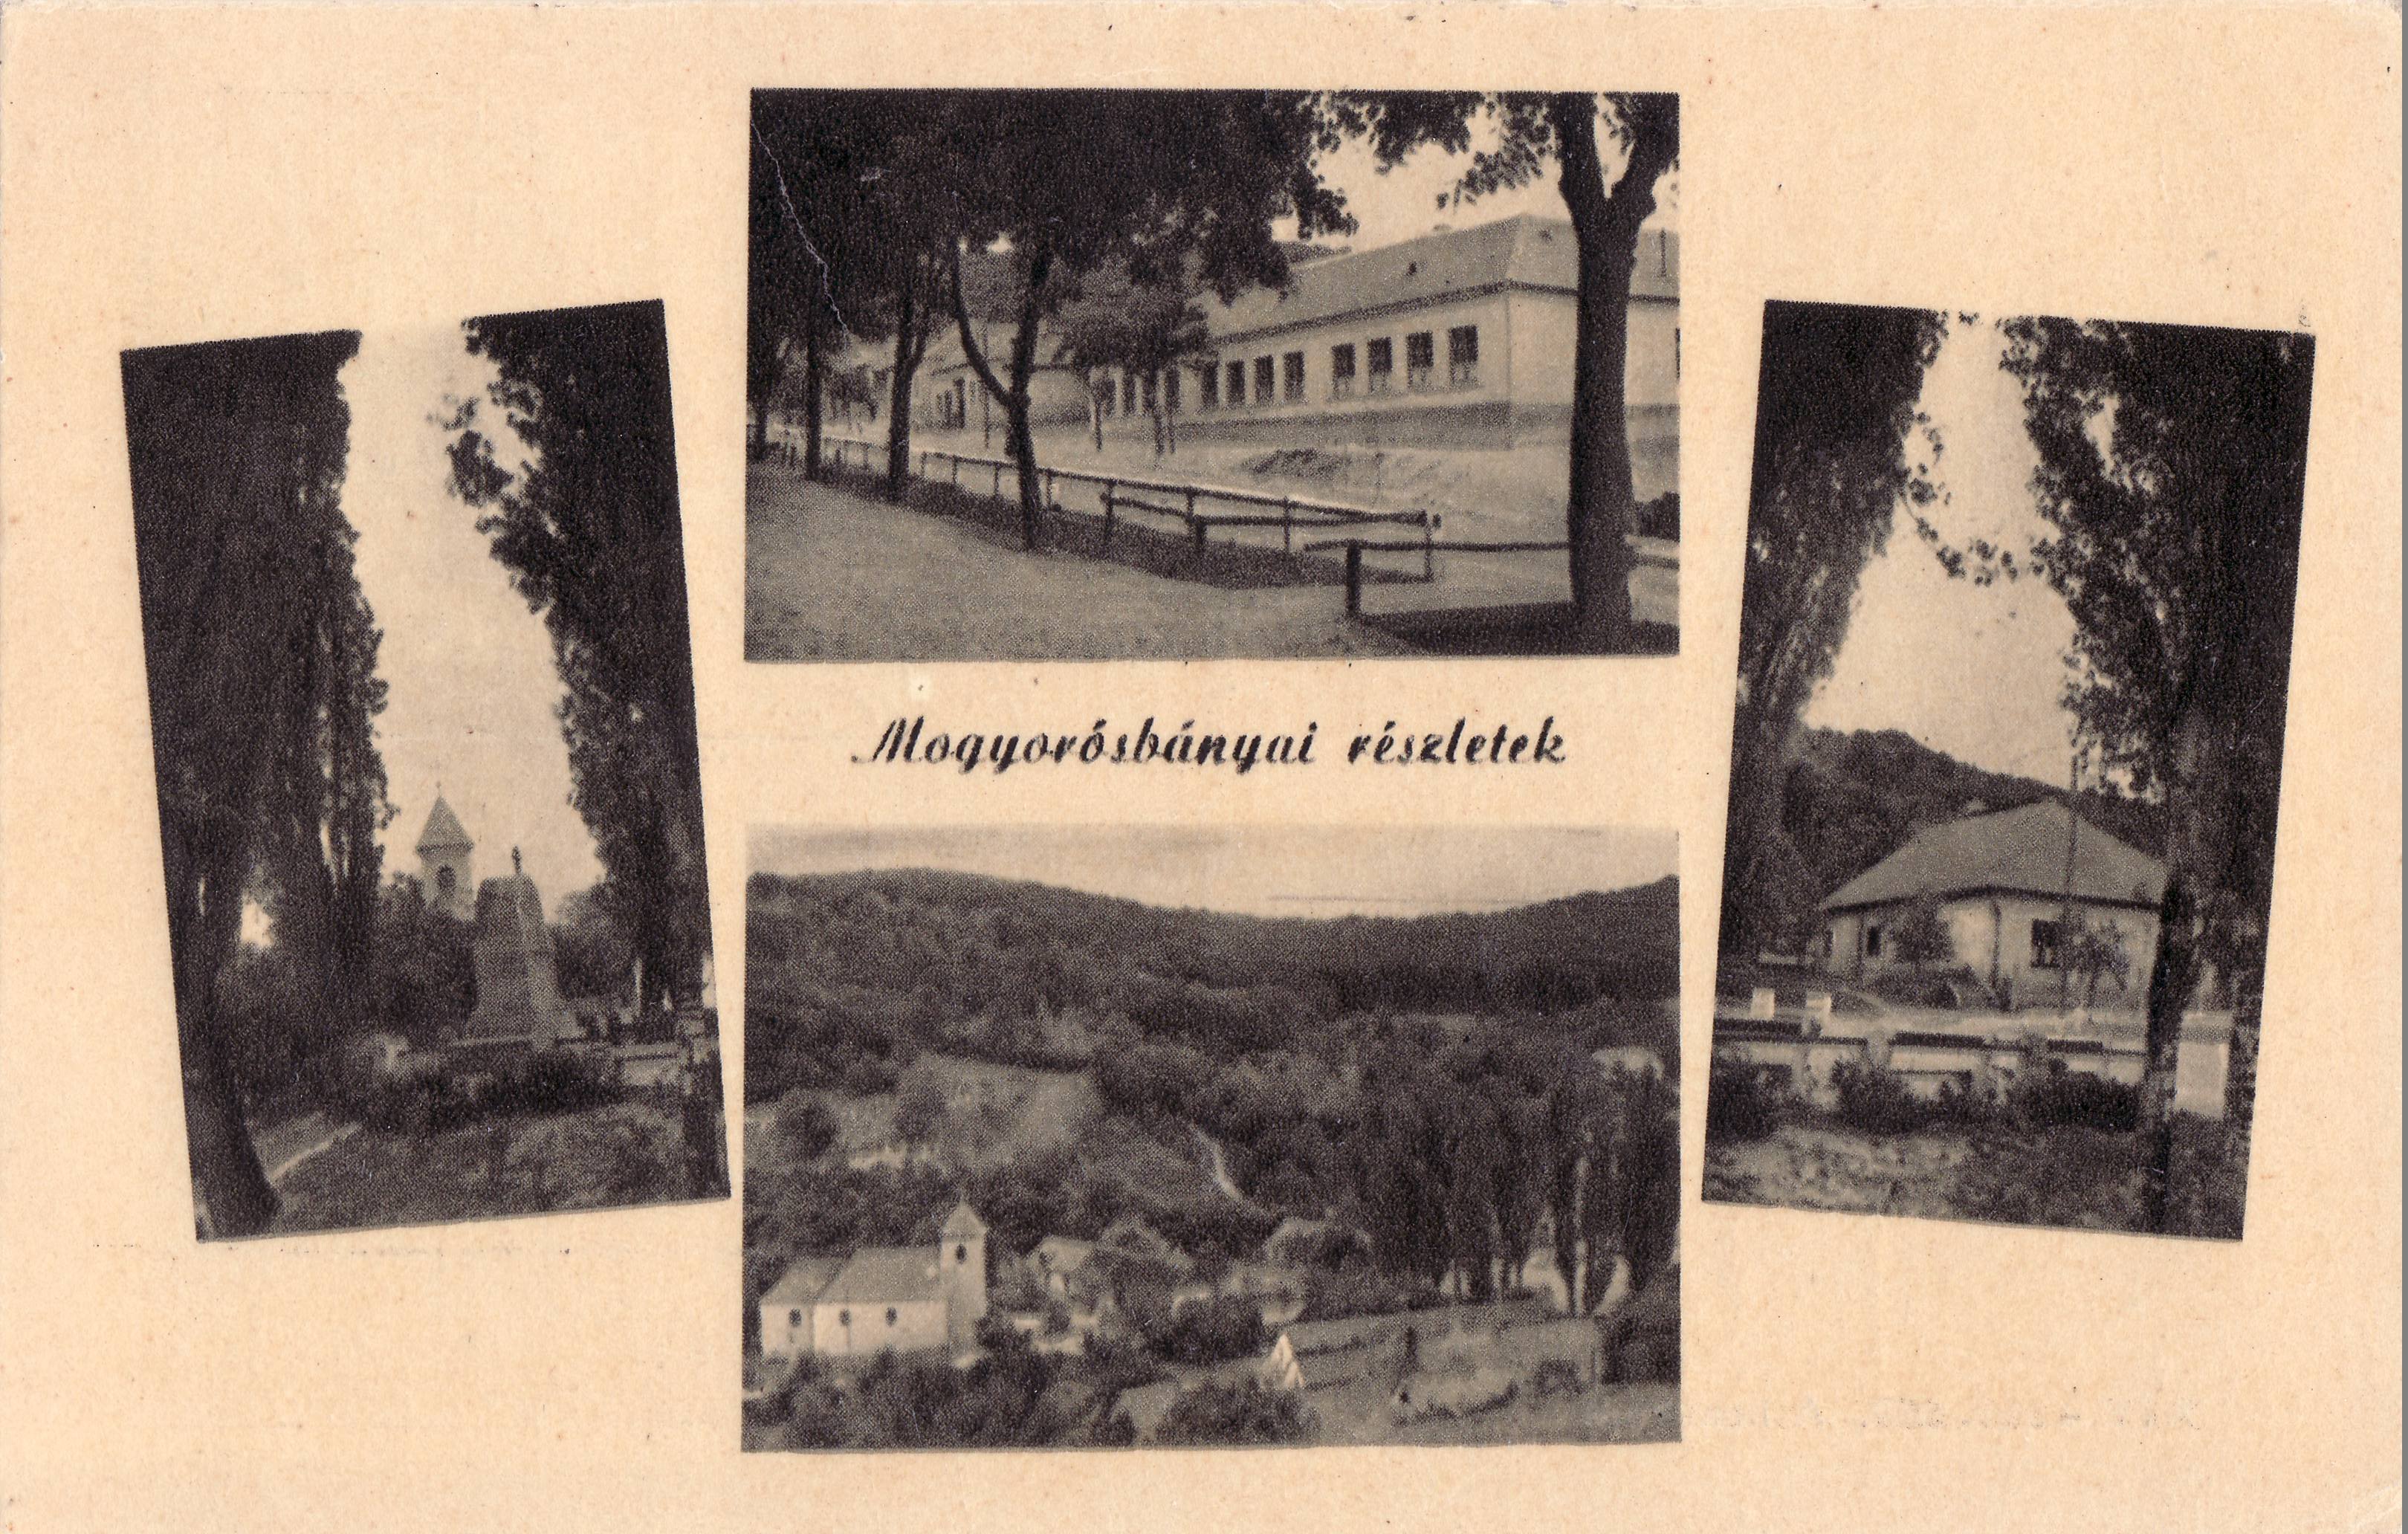 Mogyorósbányai részletek (Magyar Környezetvédelmi és Vízügyi Múzeum - Duna Múzeum CC BY-NC-SA)